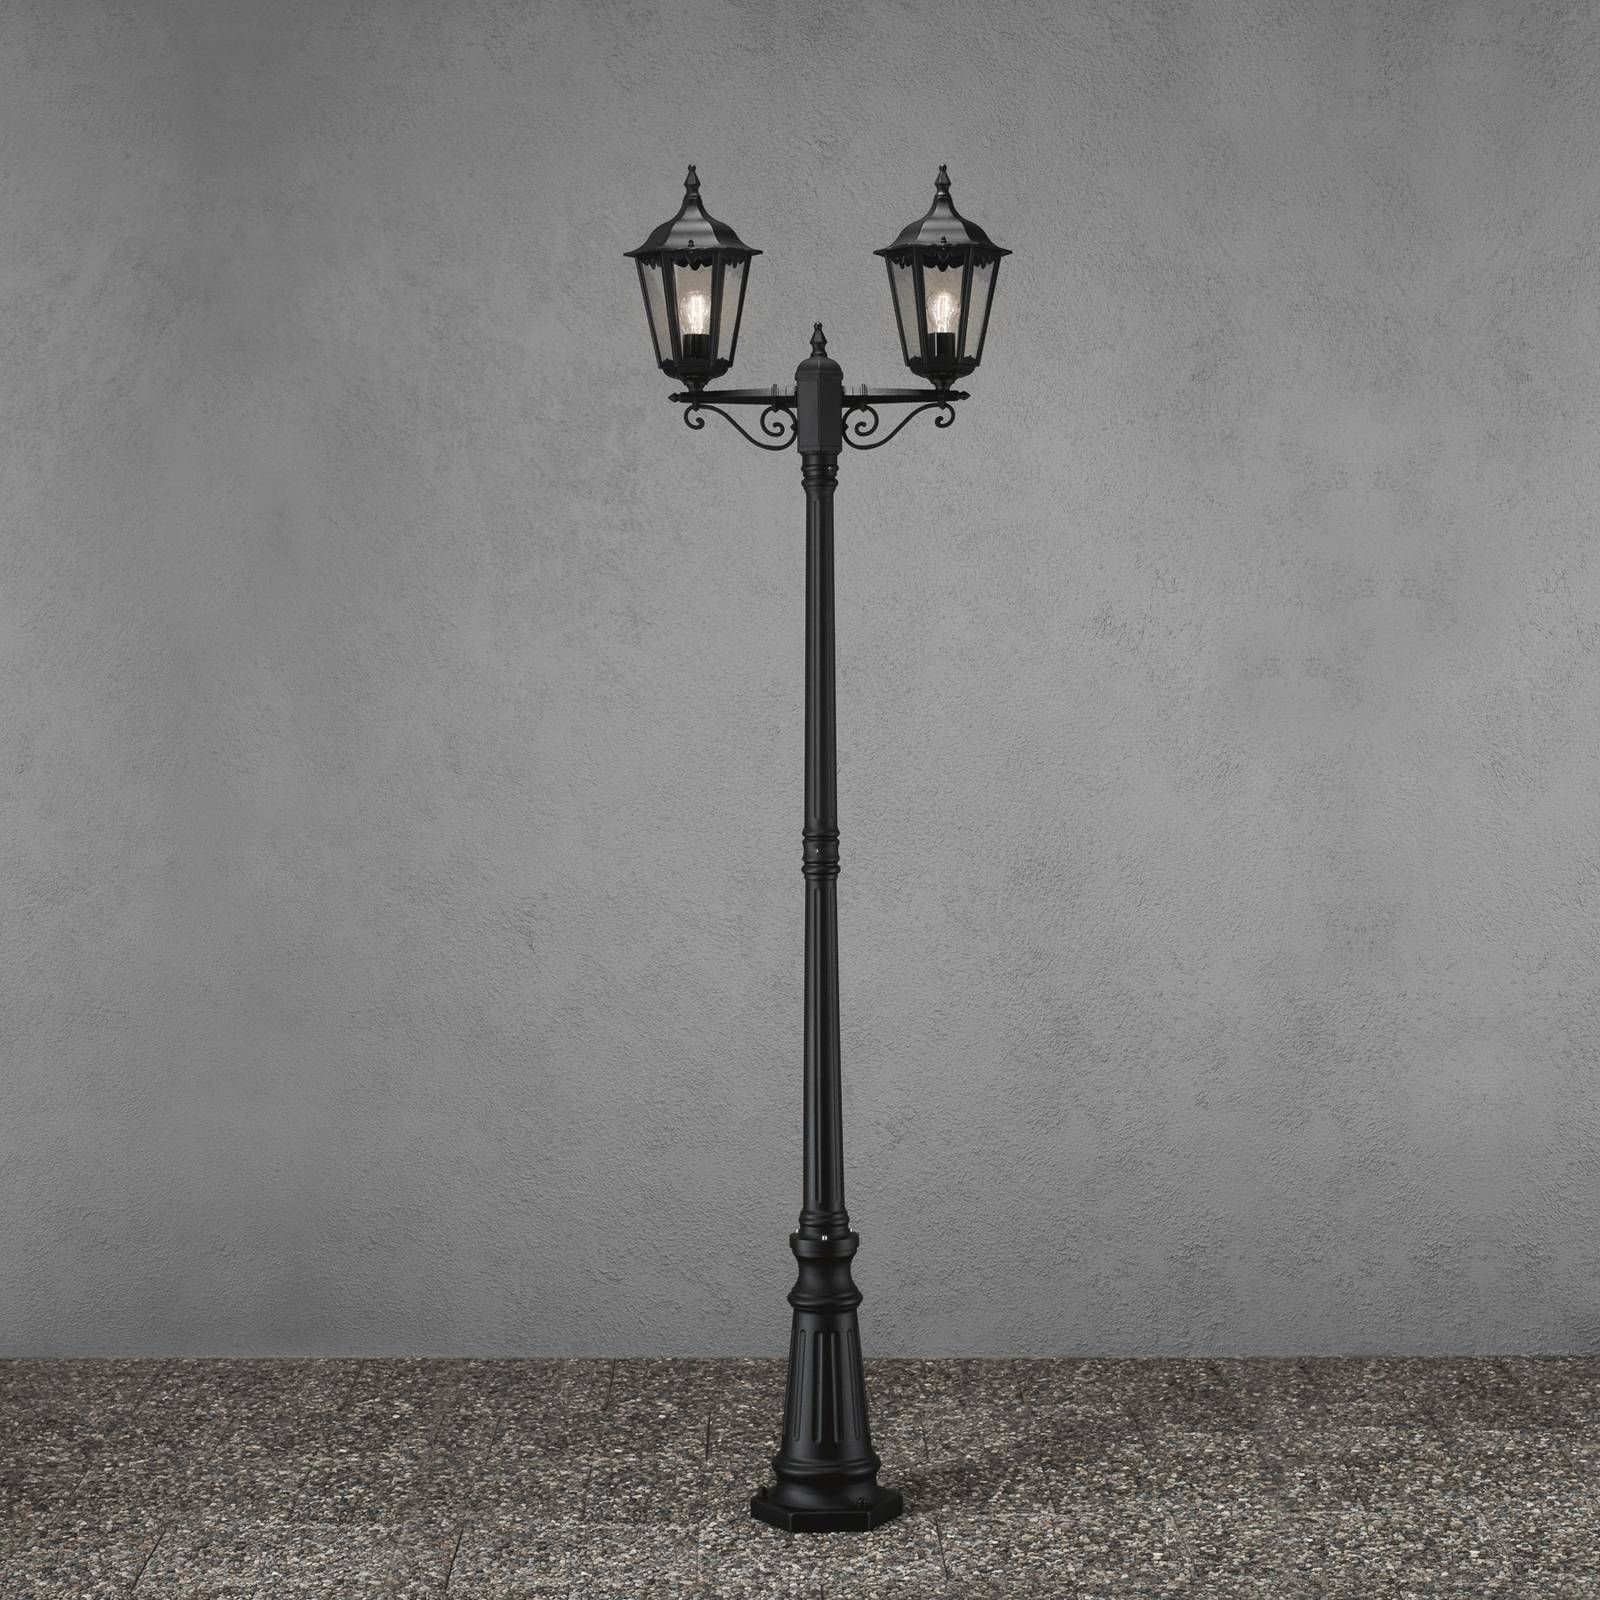 Konstsmide Stĺpové svietidlo Firenze, 2-plameňové čierne, hliník, sklo, E27, 100W, L: 25 cm, K: 220cm